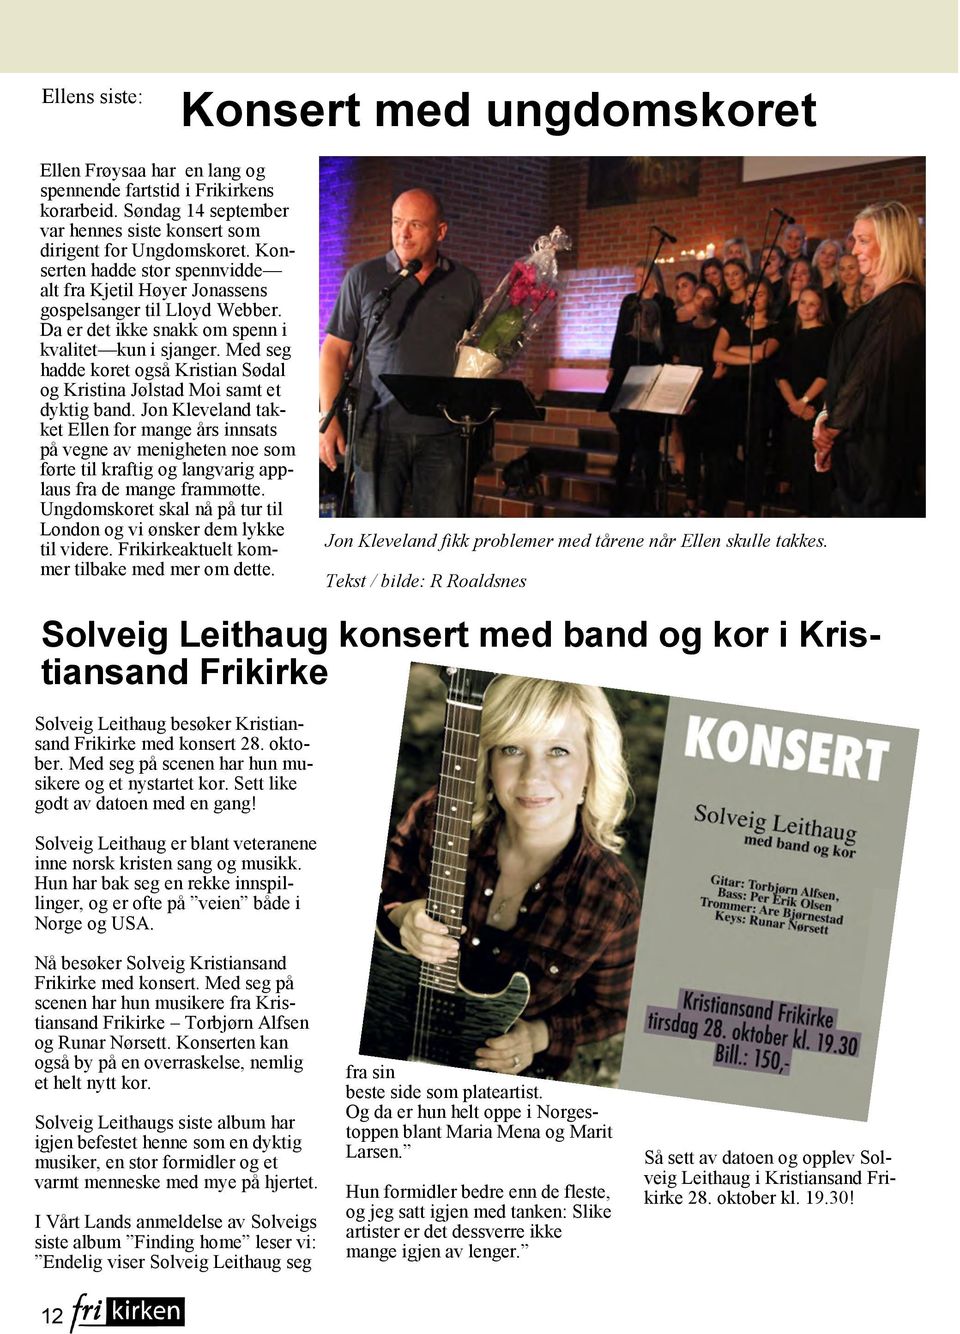 Med seg hadde koret også Kristian Sødal og Kristina Jølstad Moi samt et dyktig band.